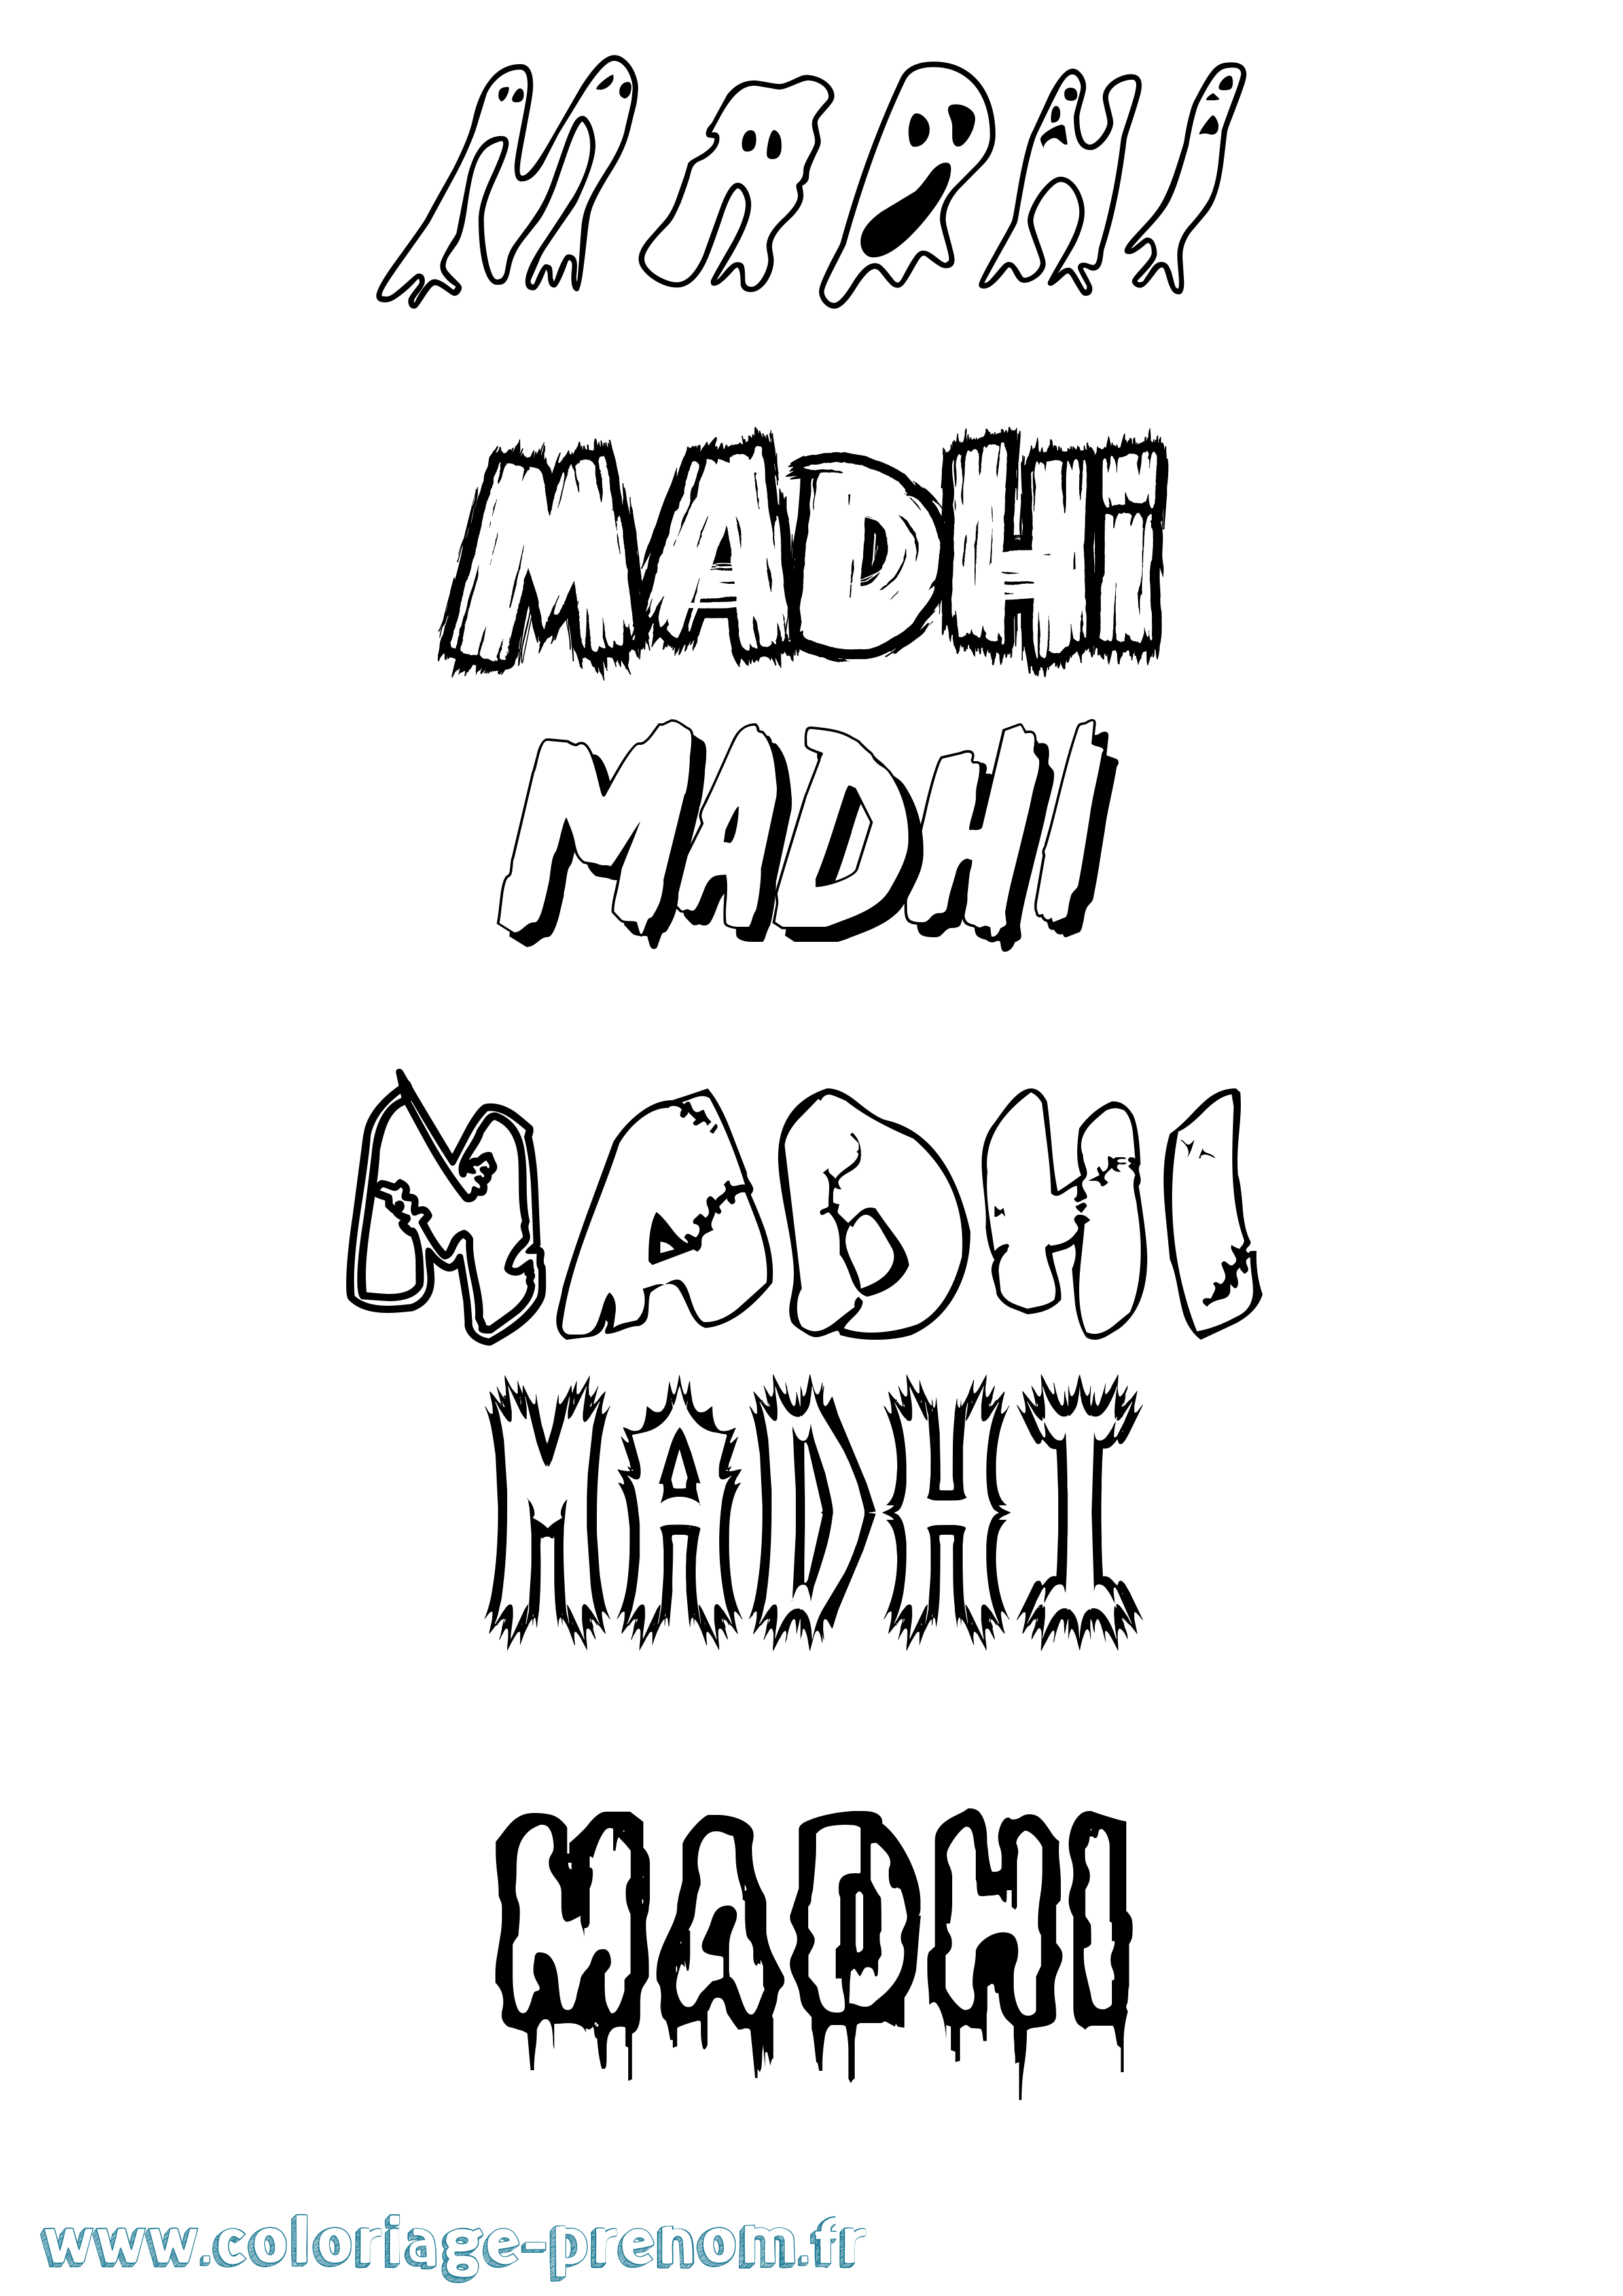 Coloriage prénom Madhi Frisson